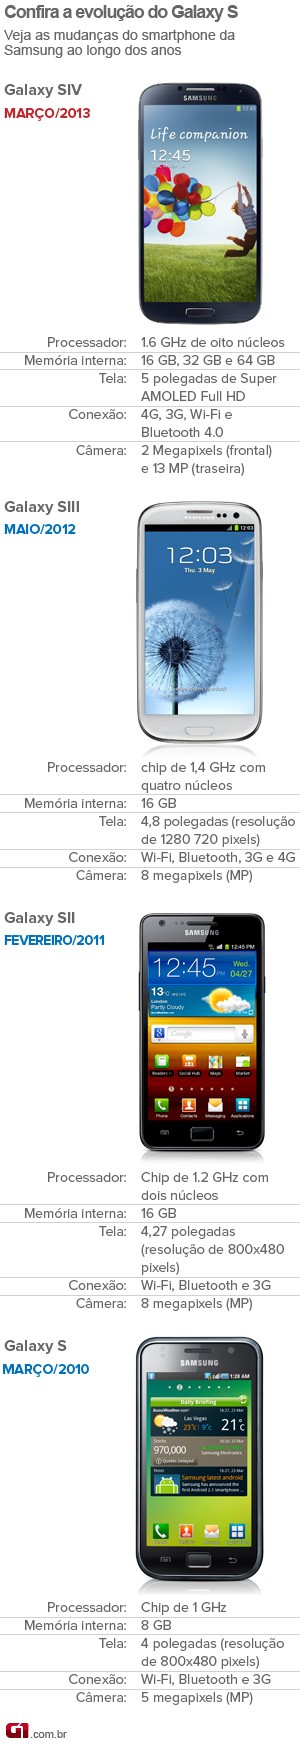 Confira a evolução do smartphone Galaxy S (Foto: Arte/G1)